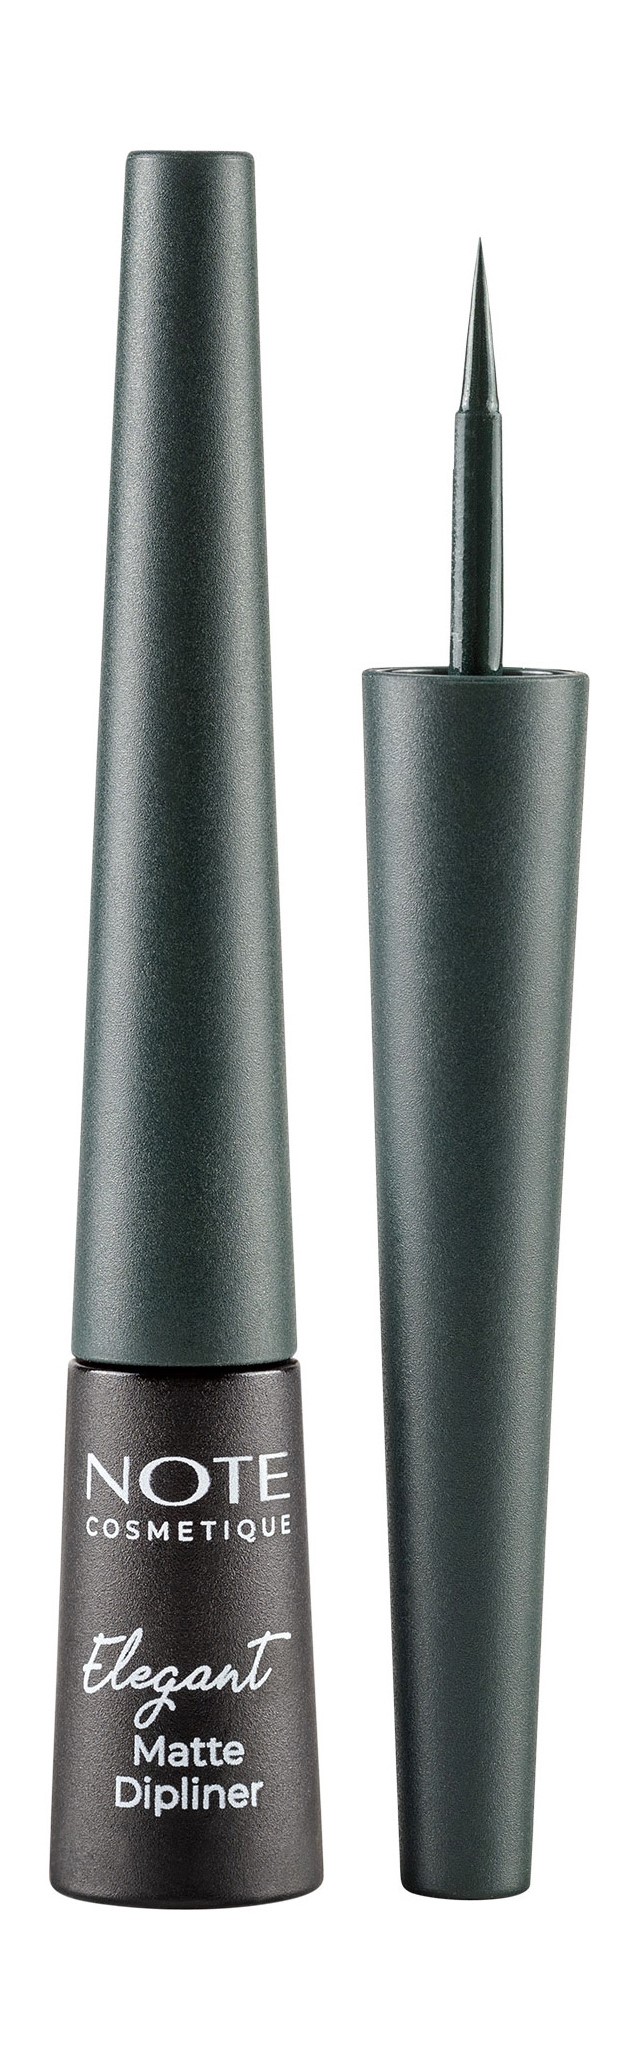 Водостойкая матовая подводка для глаз, Note Elegant Matte Dipliner pastel водостойкая подводка для глаз profashion artliner pen